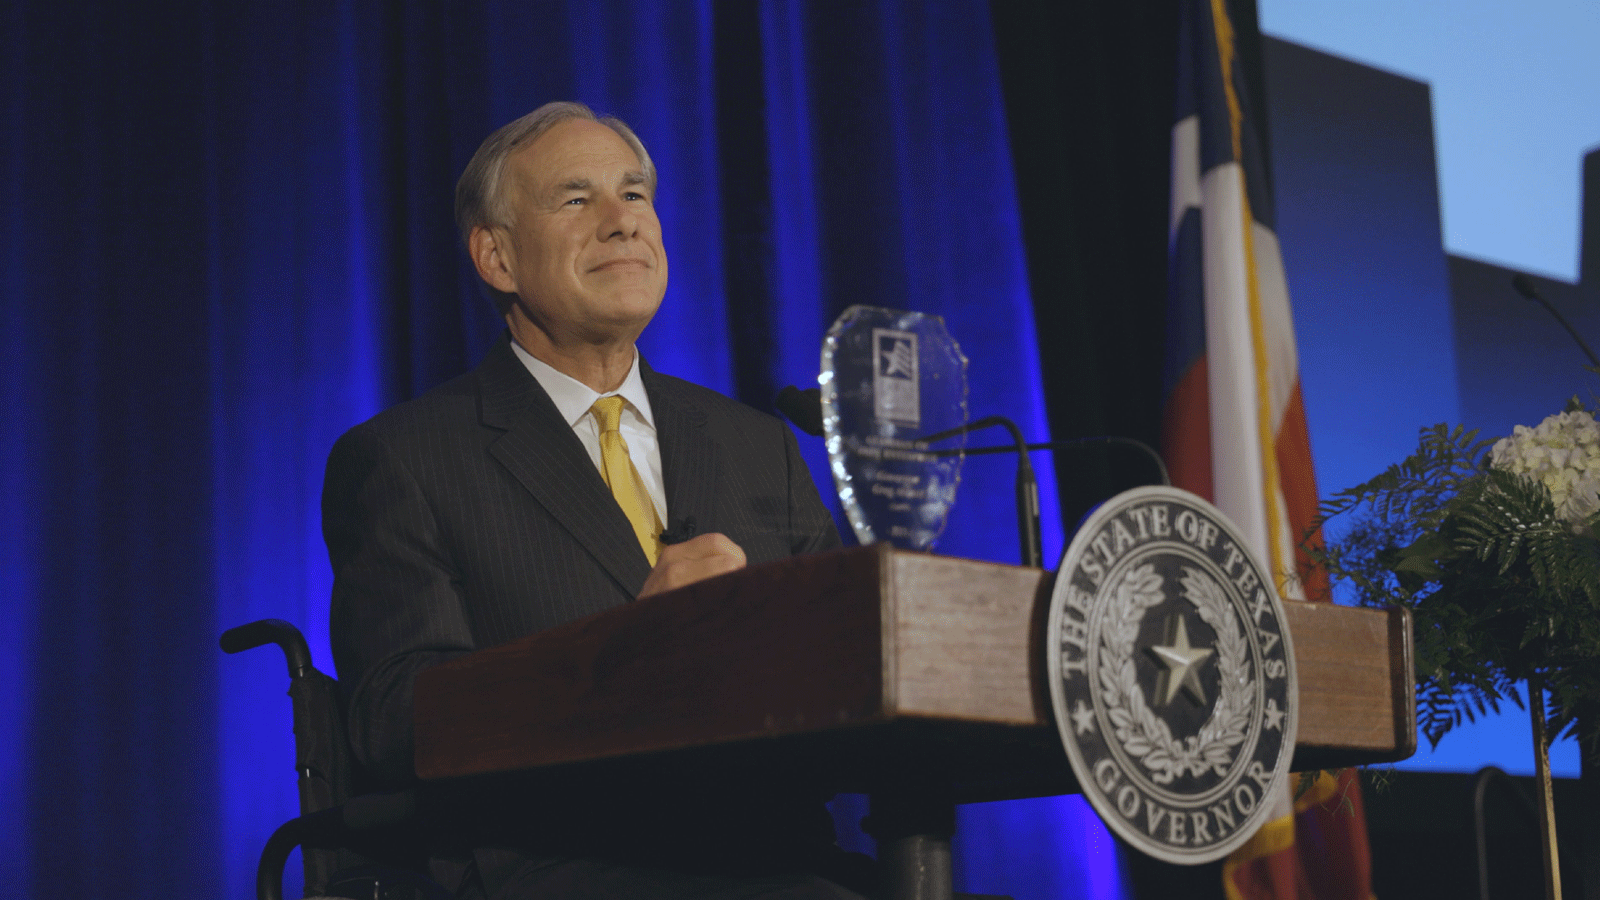 صورة من حساب حاكم تكساس غريغ أبوت الموثّق على تويتر خلال مشاركته بحفل عشاء لرابطة تكساس للأعمال.